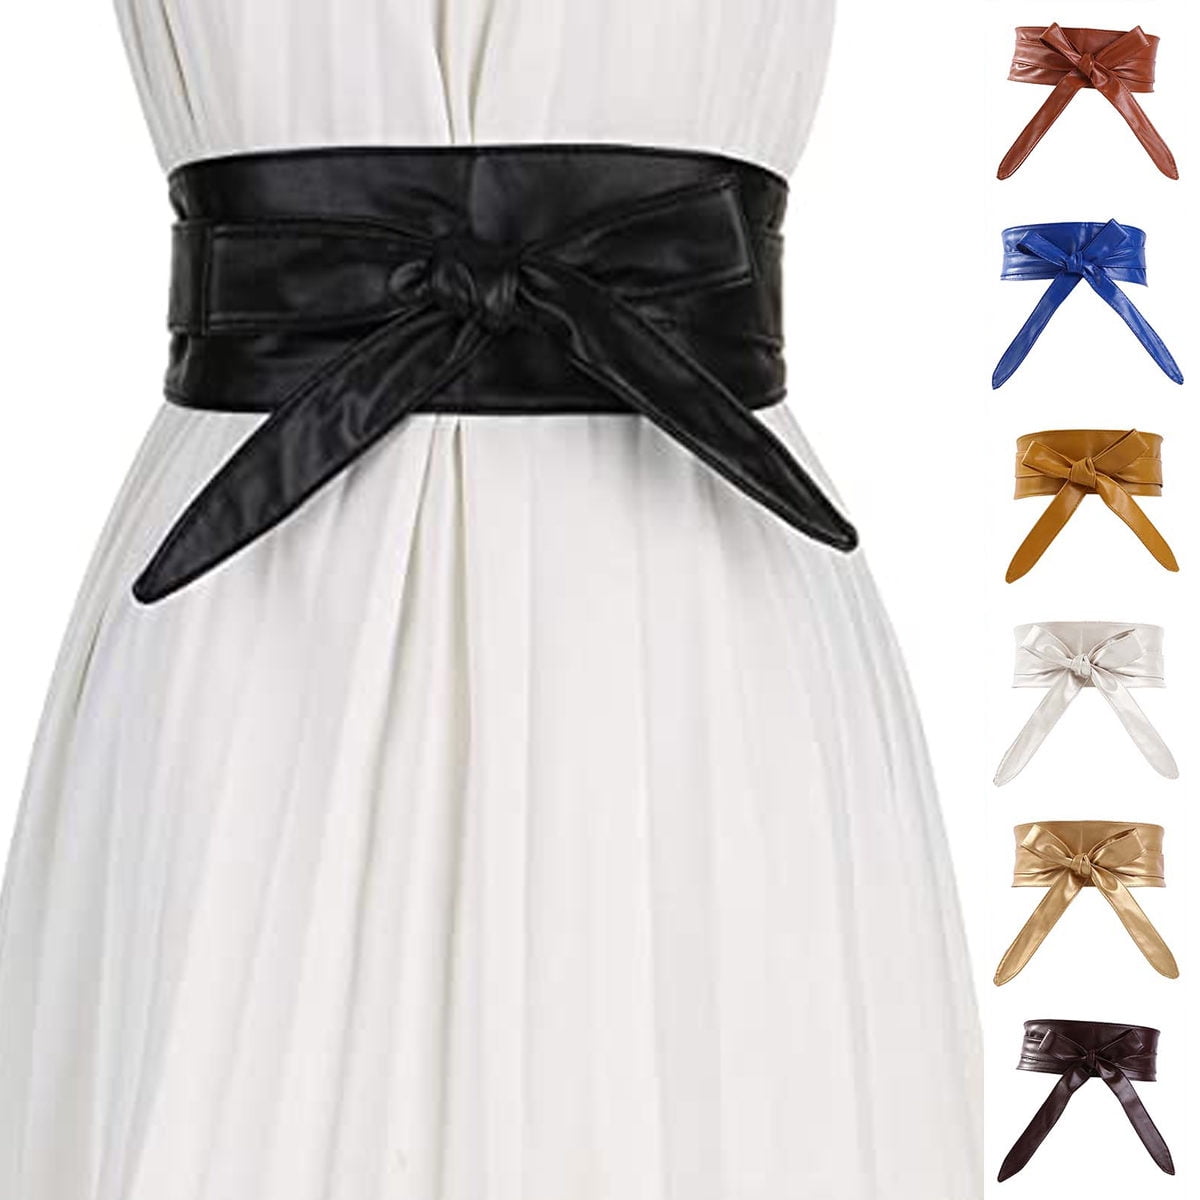 Women Waist Belt Bow-Knot Waistband Wide Elastic Cinch Dress Evening Party Belts